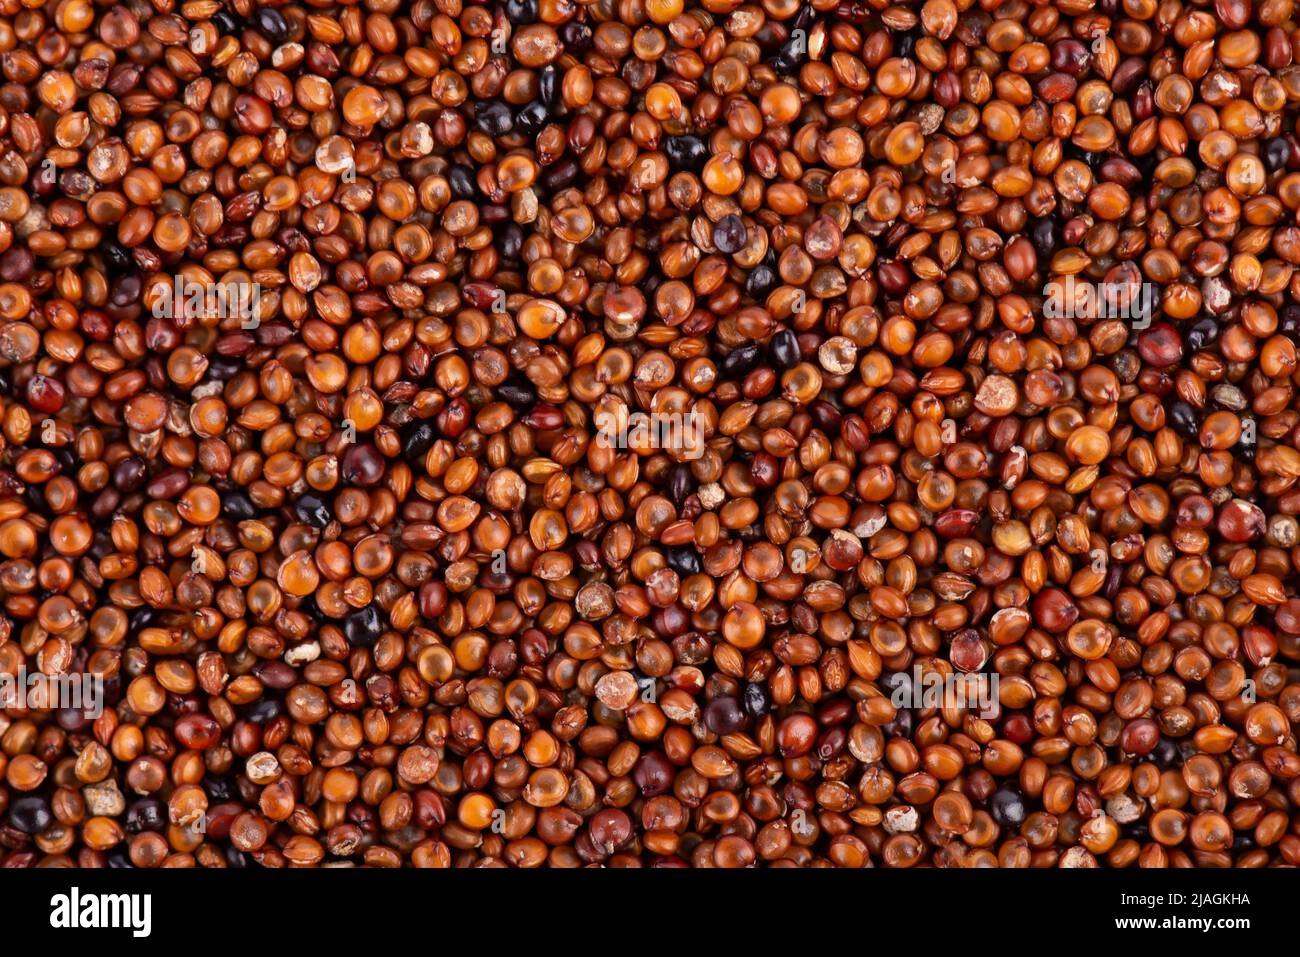 Canihua grains background. Qaniwa, qanawa, qanawi or kaniwa seeds. Dry grains of chenopodium pallidicaule. Top view Stock Photo